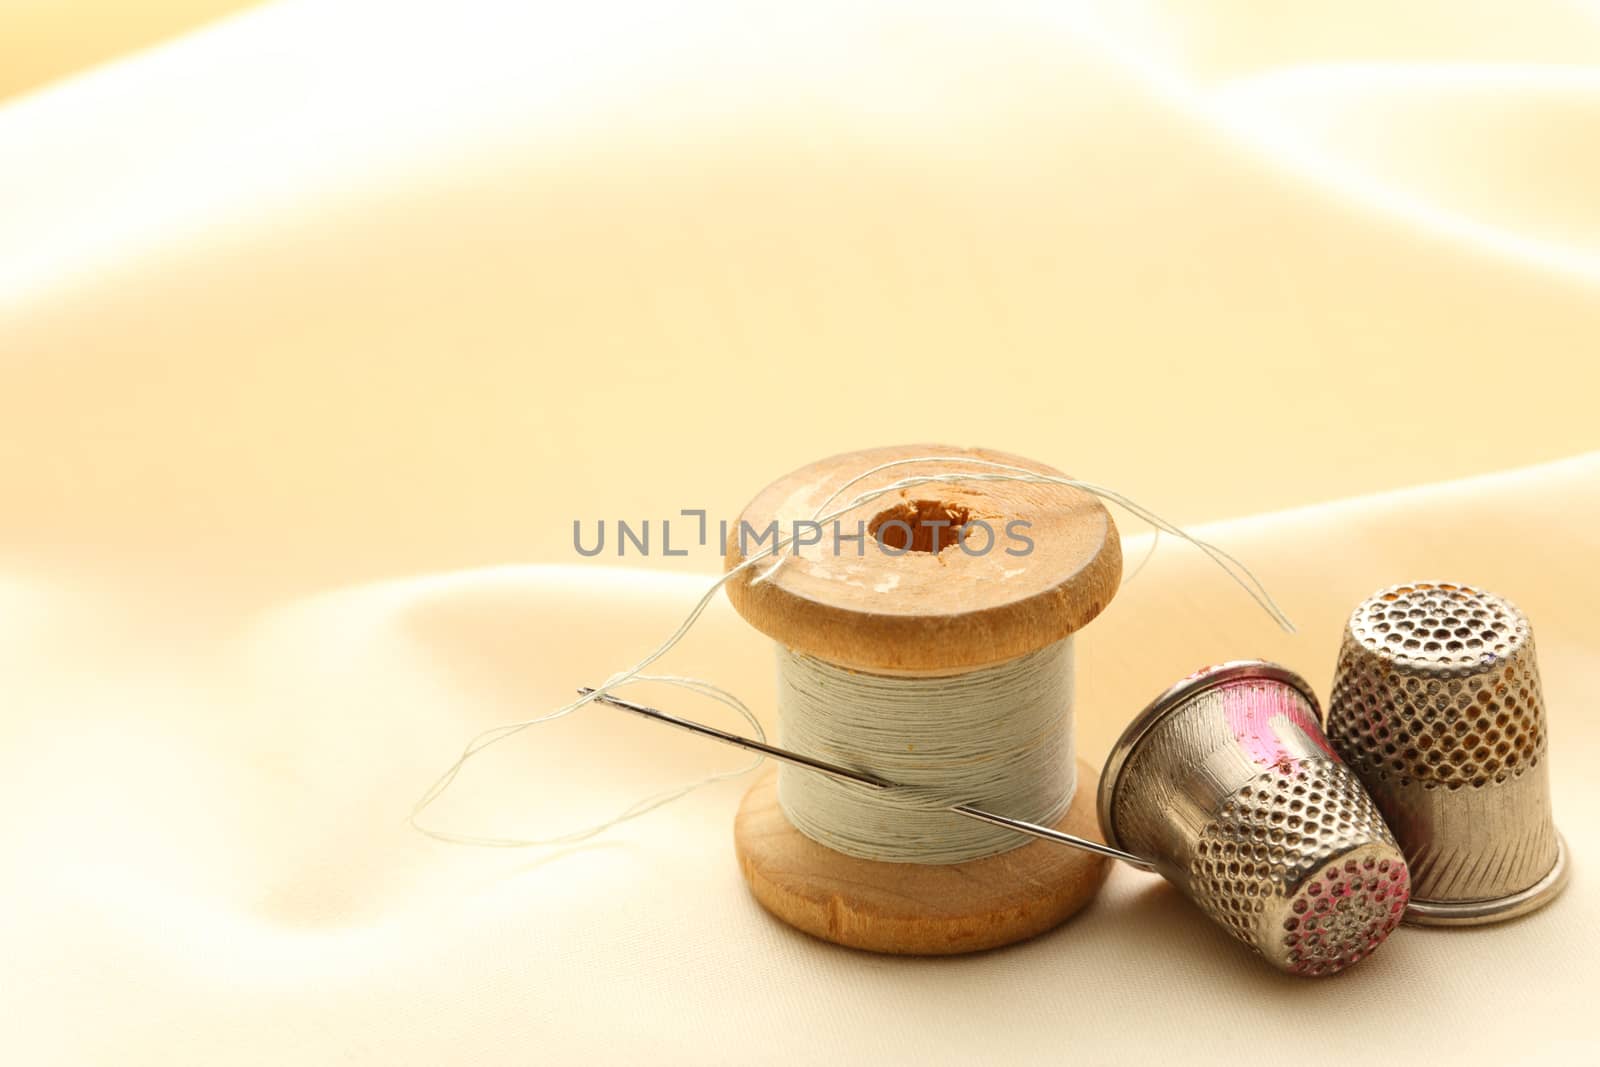 Sewing thimbles, bobbin and needle by Garsya